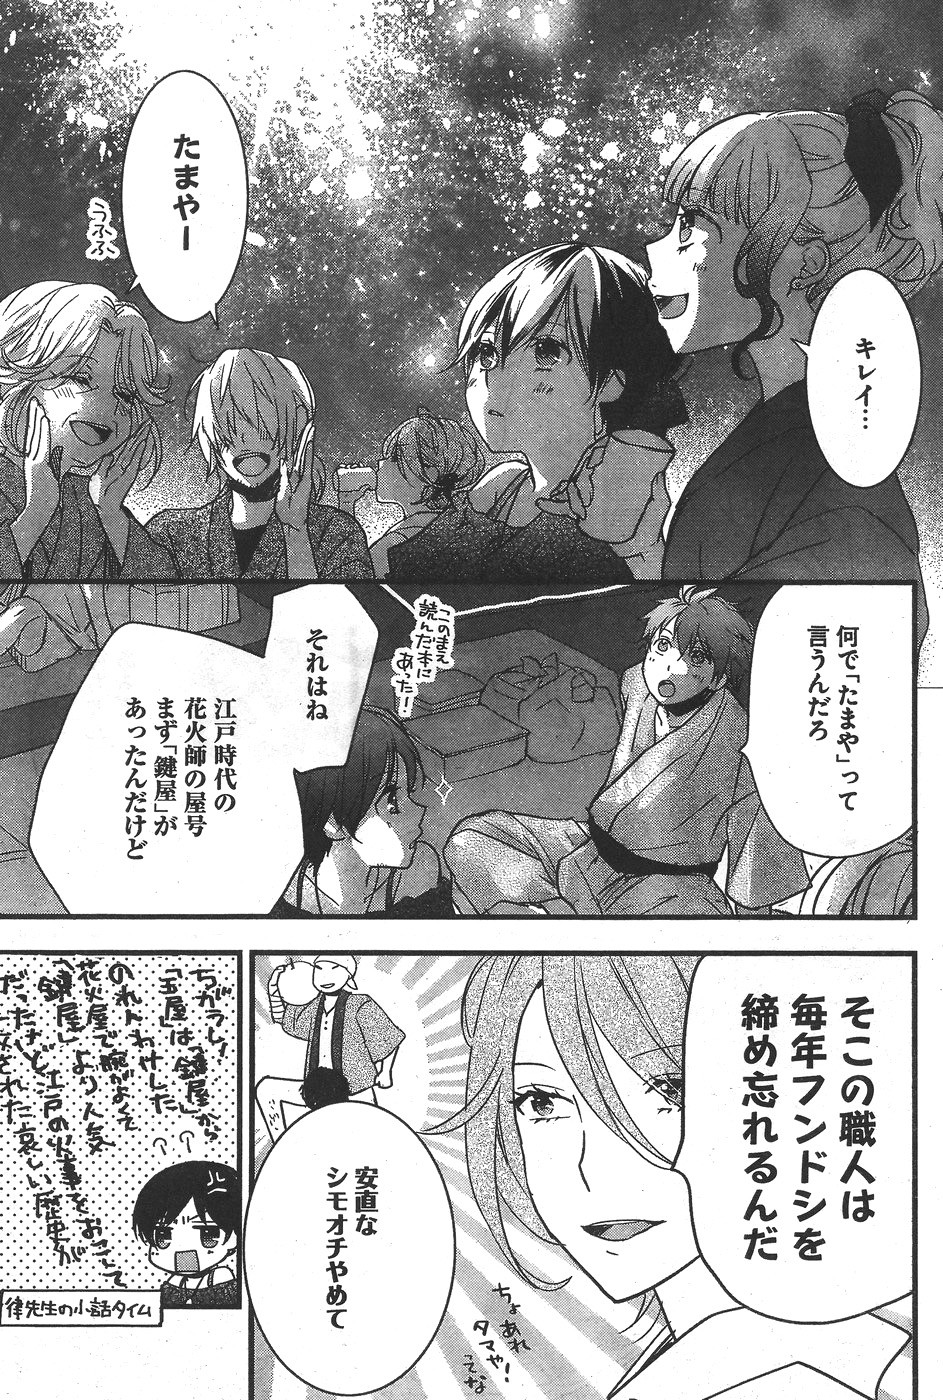 Bokura wa Minna Kawaisou - Chapter 74 - Page 3